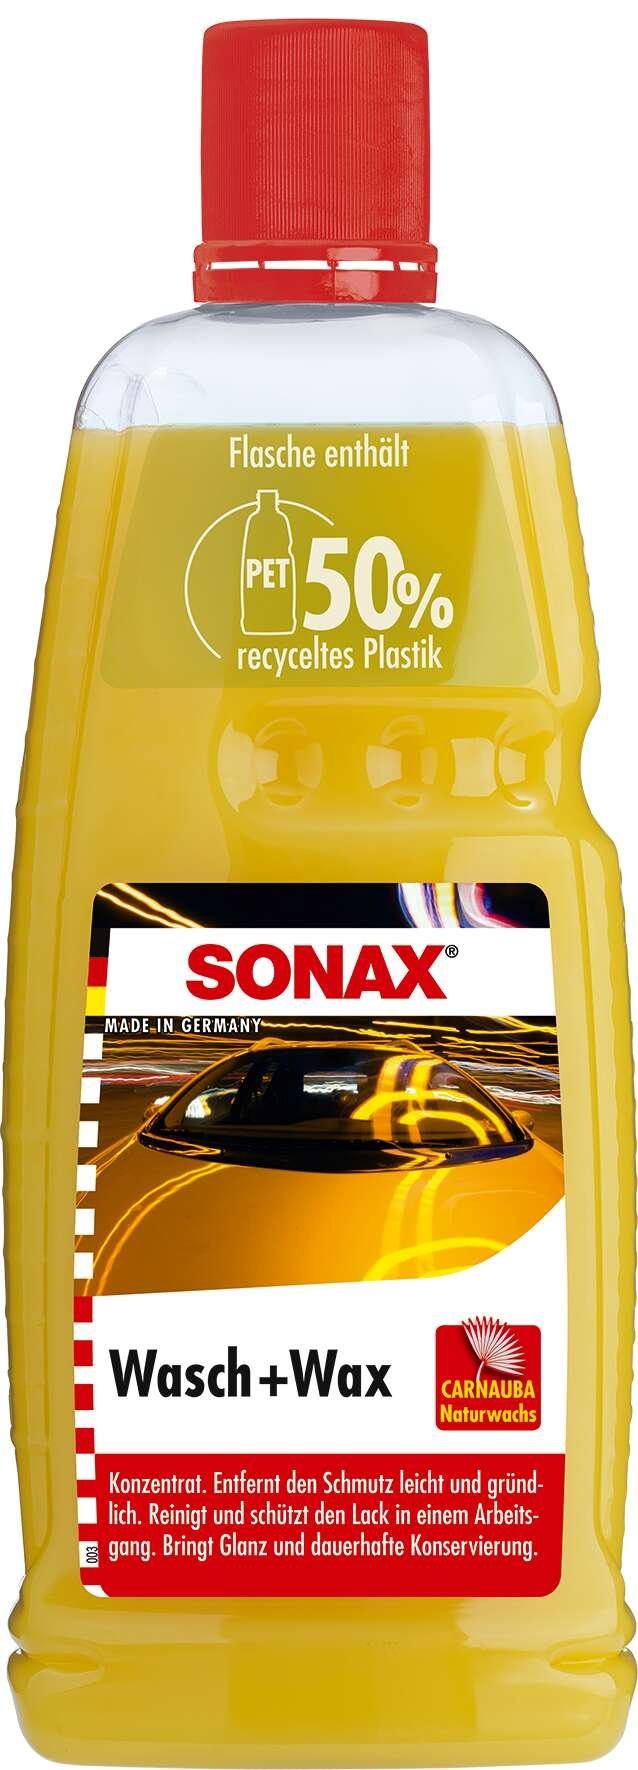 SONAX Wash + Wax 1000 ml PET-flacon